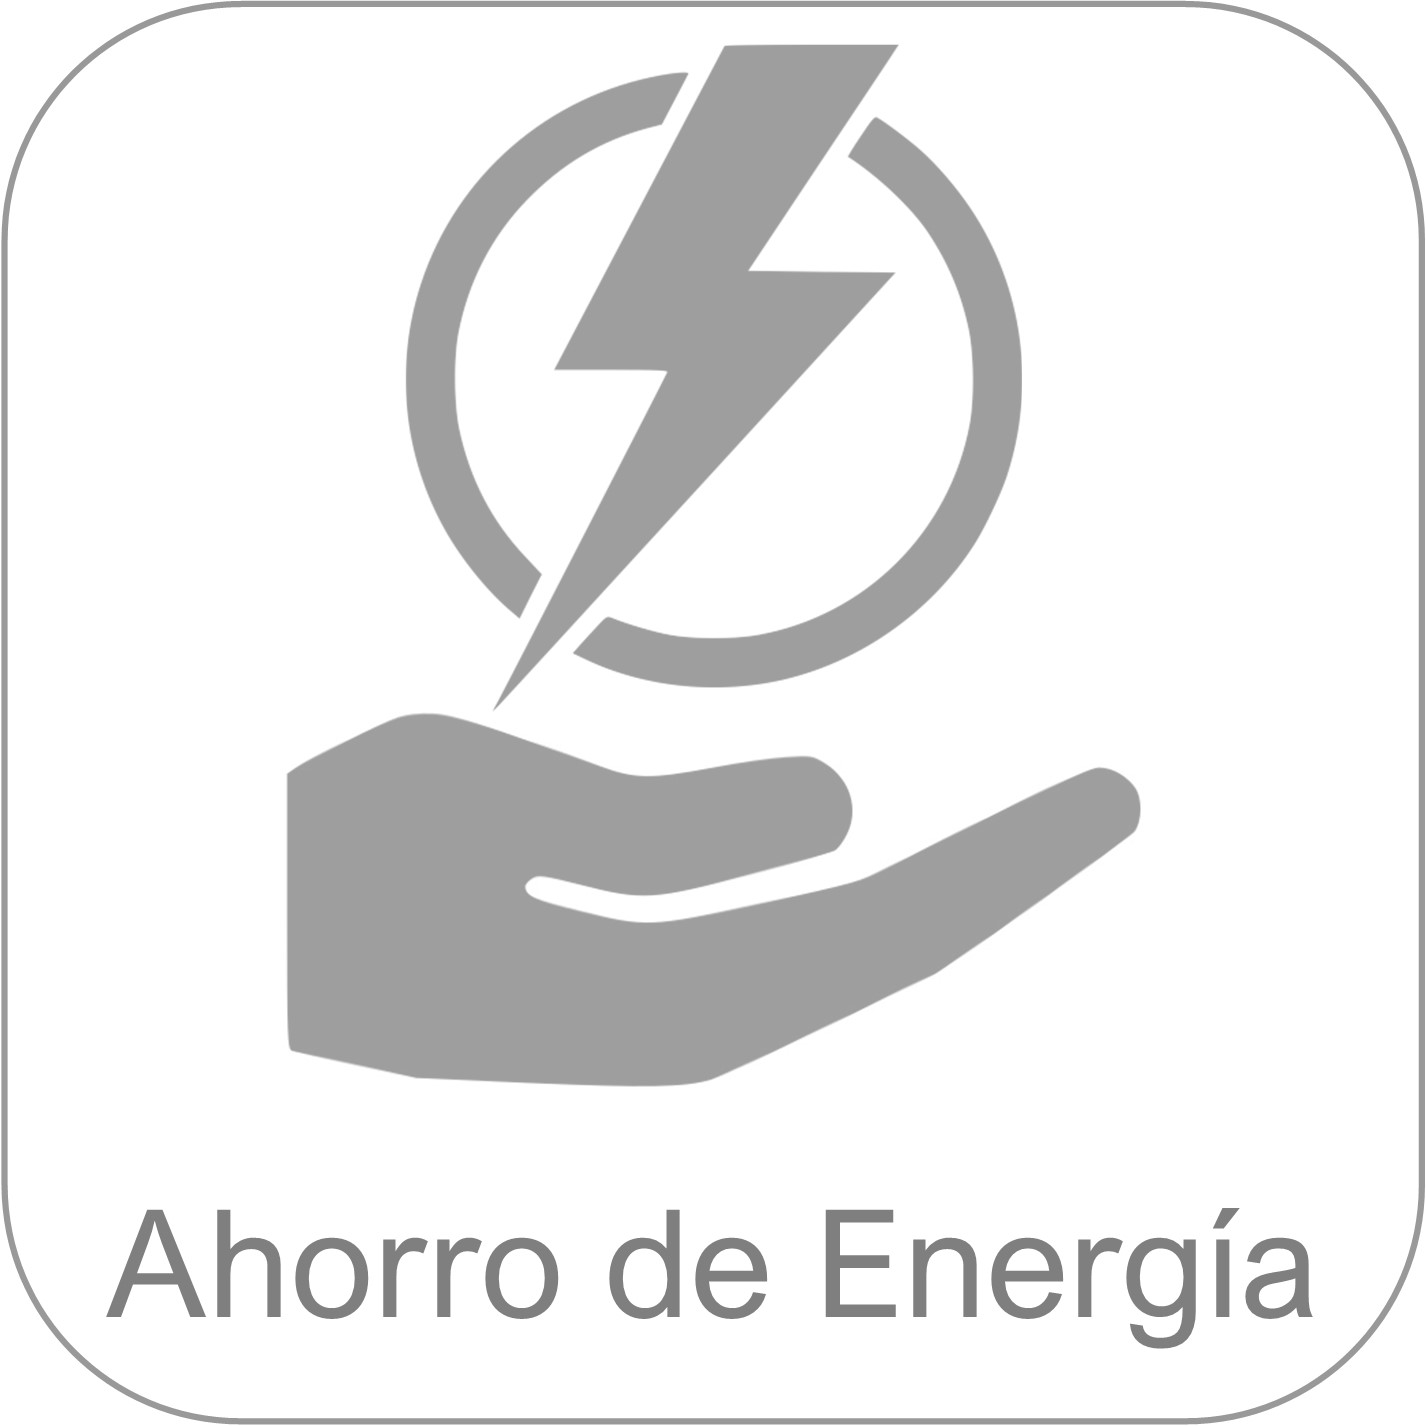 Monobloque NIC15 - Oficinas móviles - Ahorro de energía